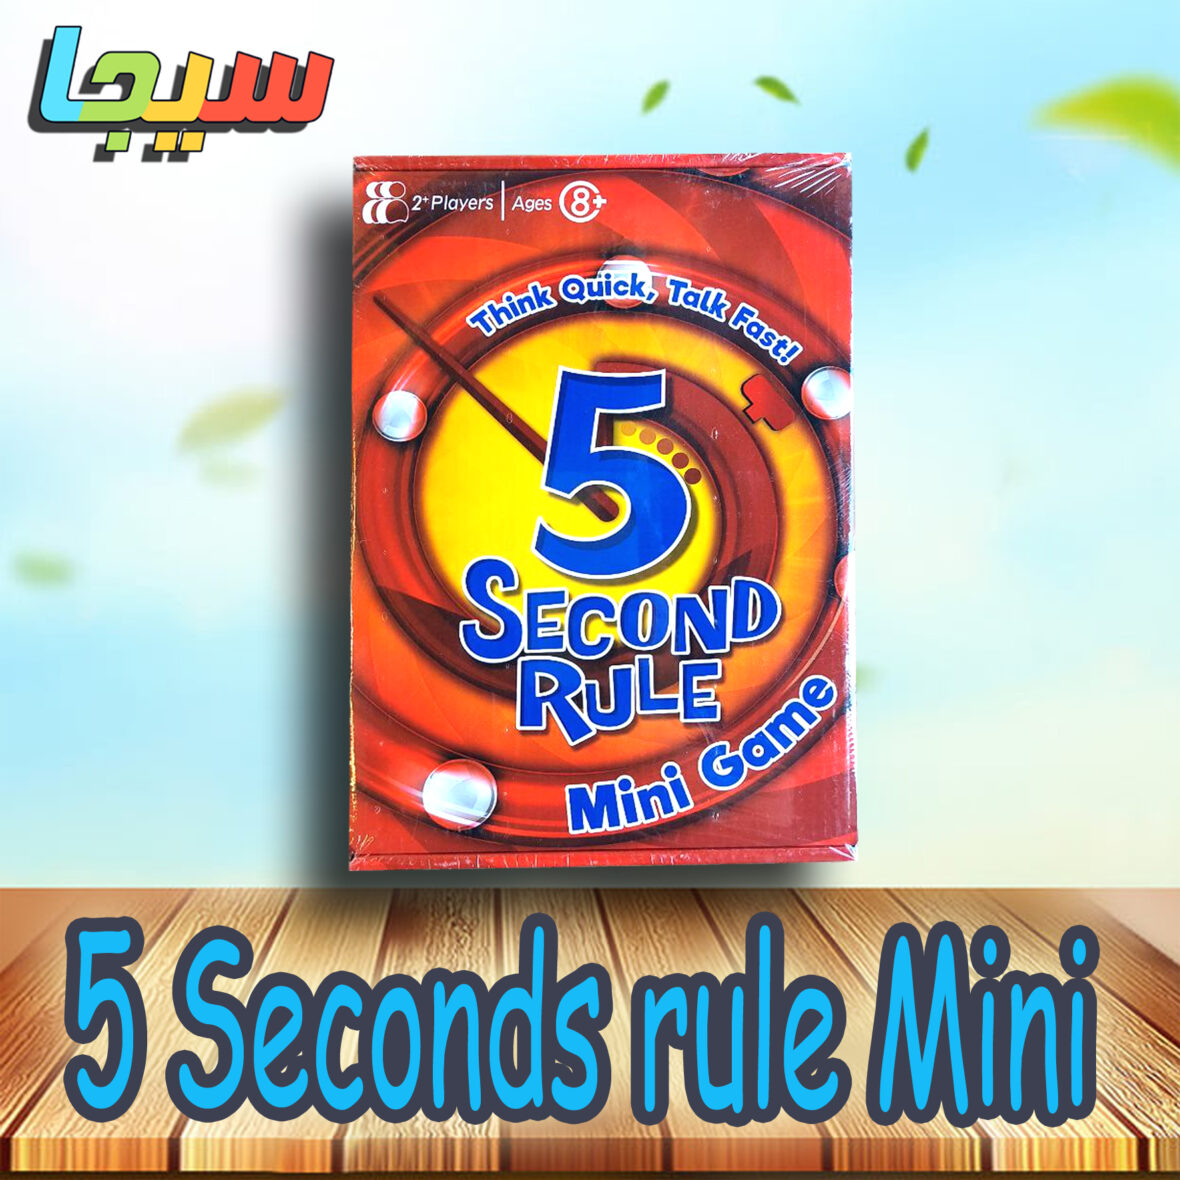 5Seconds rule Mini